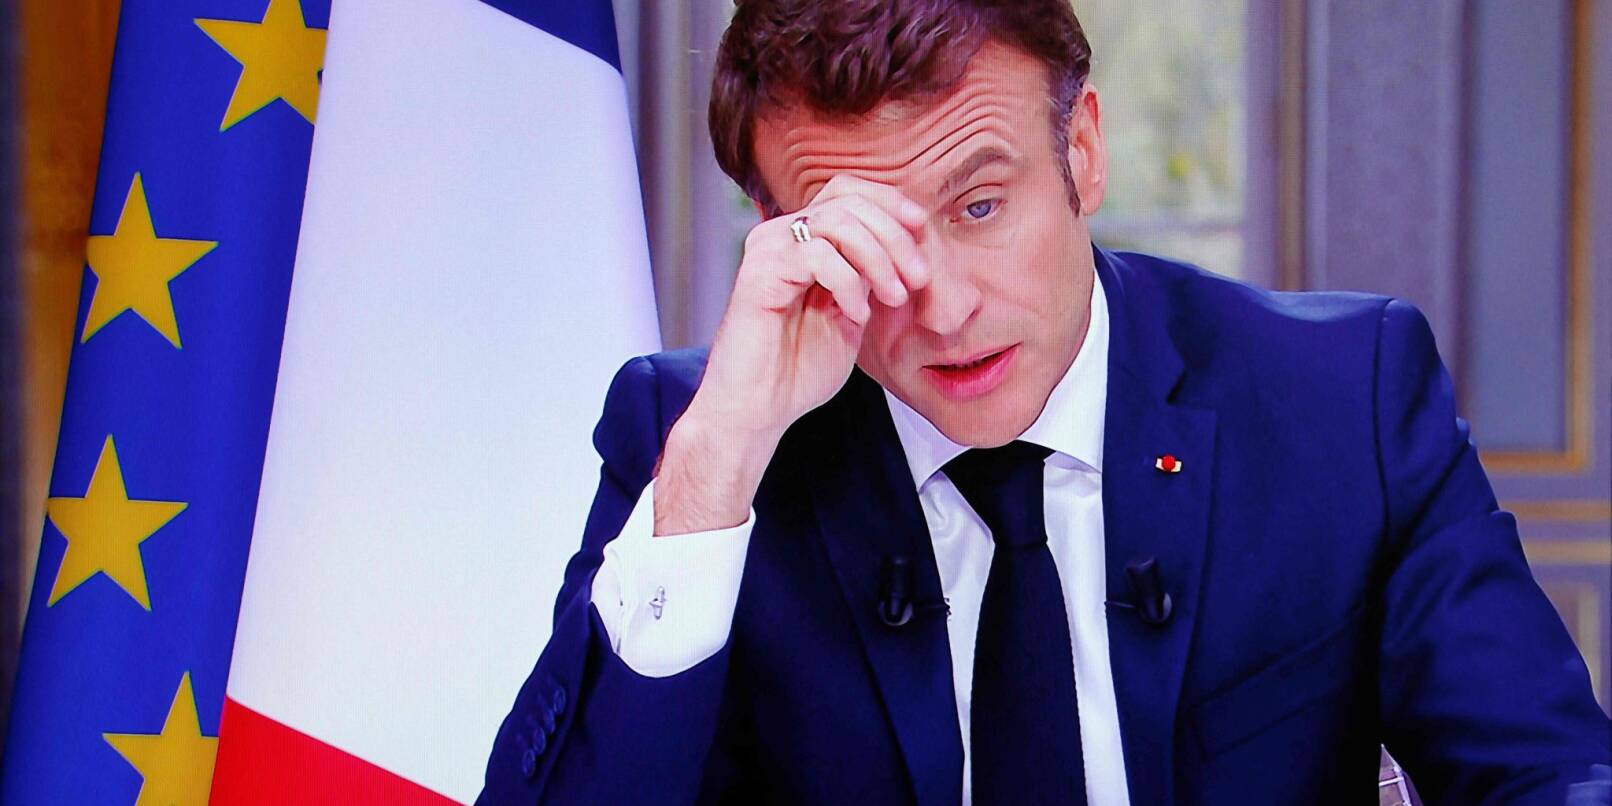 Der französische Präsident Emmanuel Macron ist auf dem Bildschirm zu sehen, als er während eines Fernsehinterviews aus dem Elysee-Palast in Paris spricht.